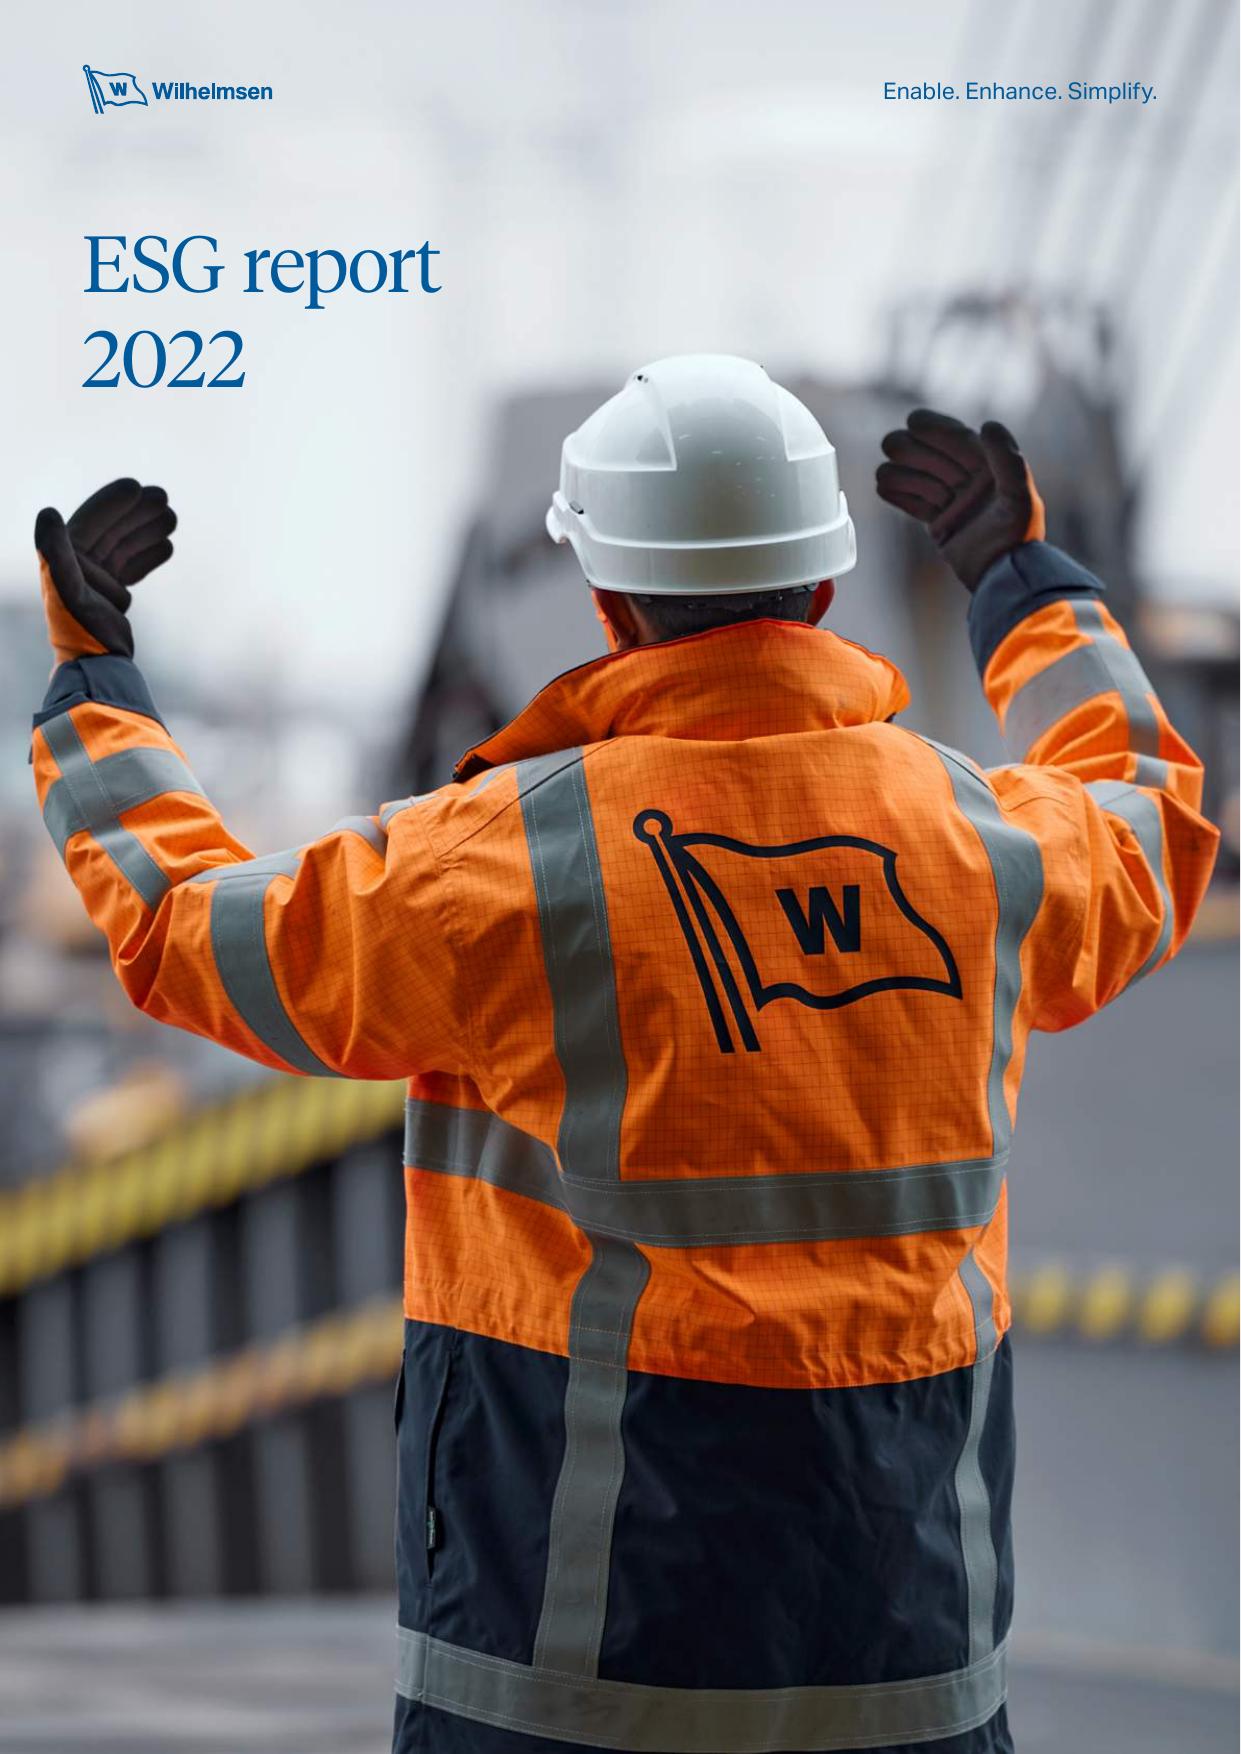 ALPLA 2022 Annual Report